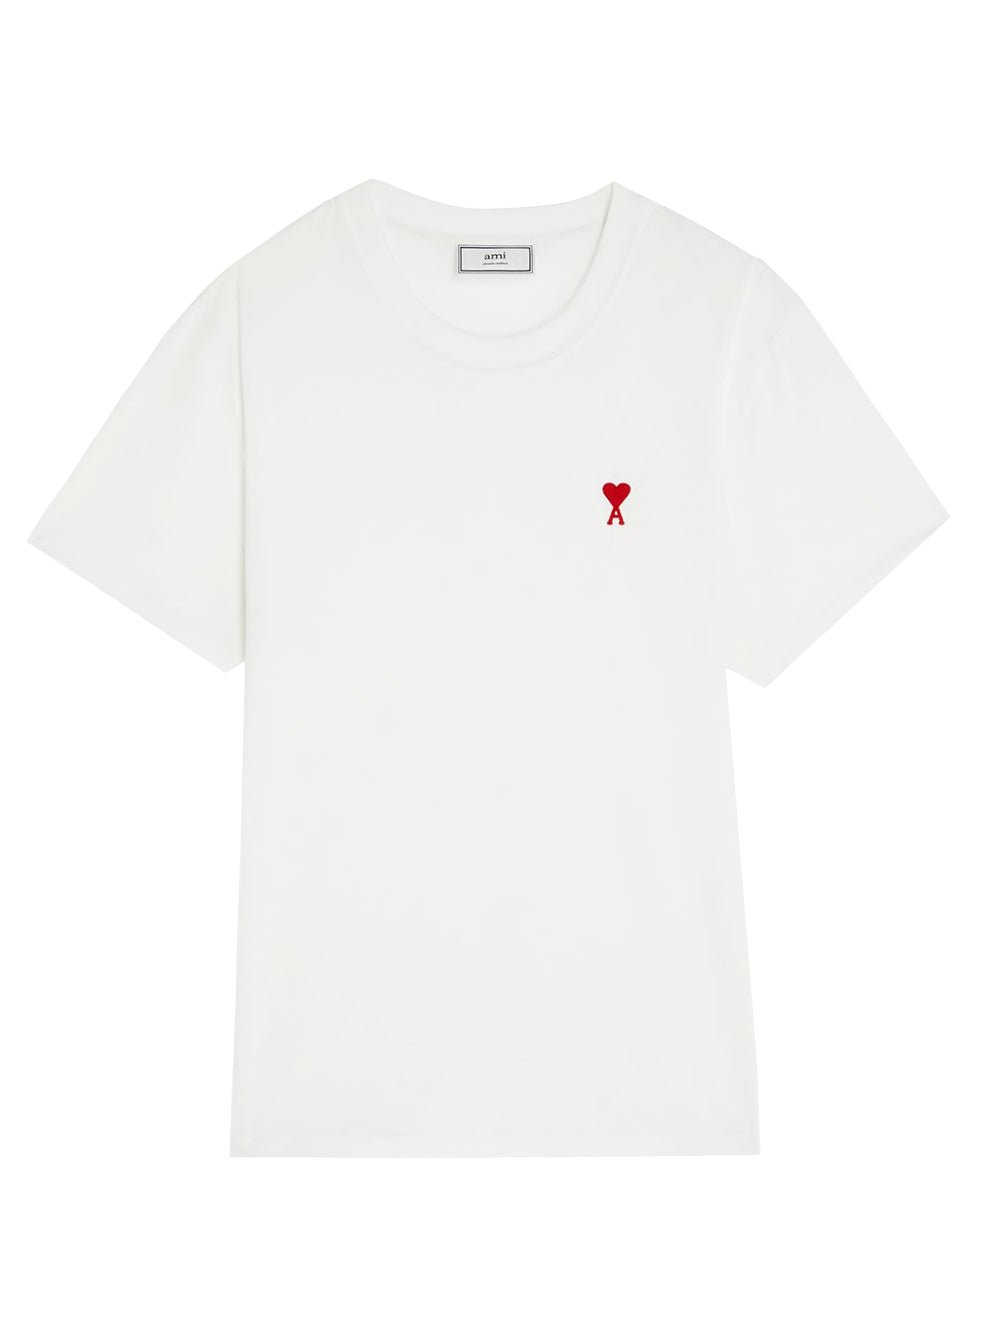 Paris White T-Shirt - Tha Plug ZA